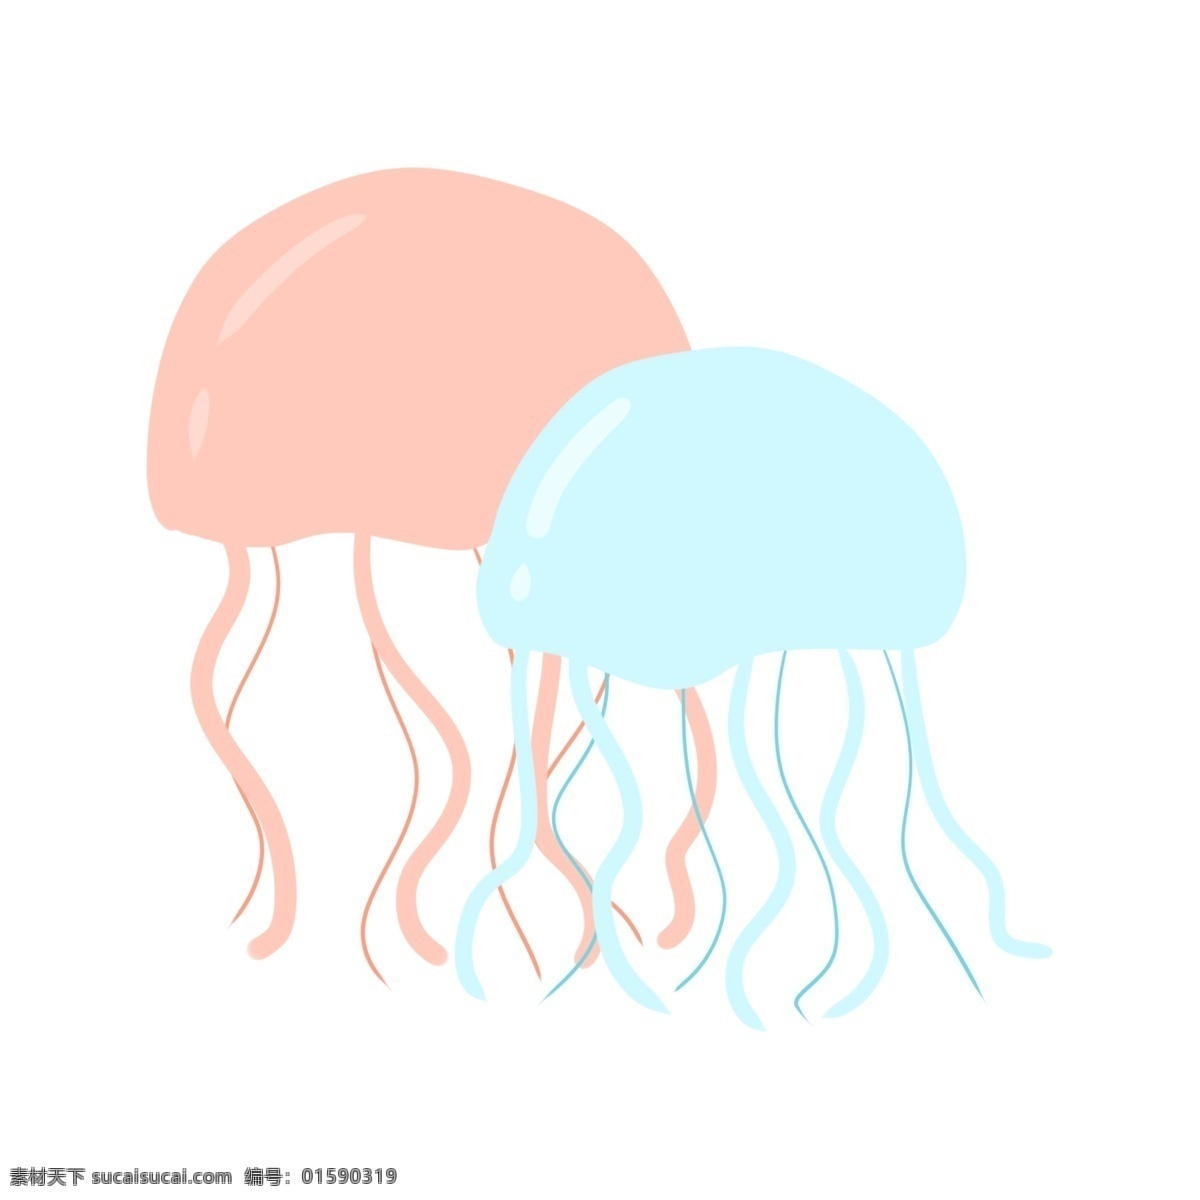 两个漂亮水母 水母 海洋生物 动物